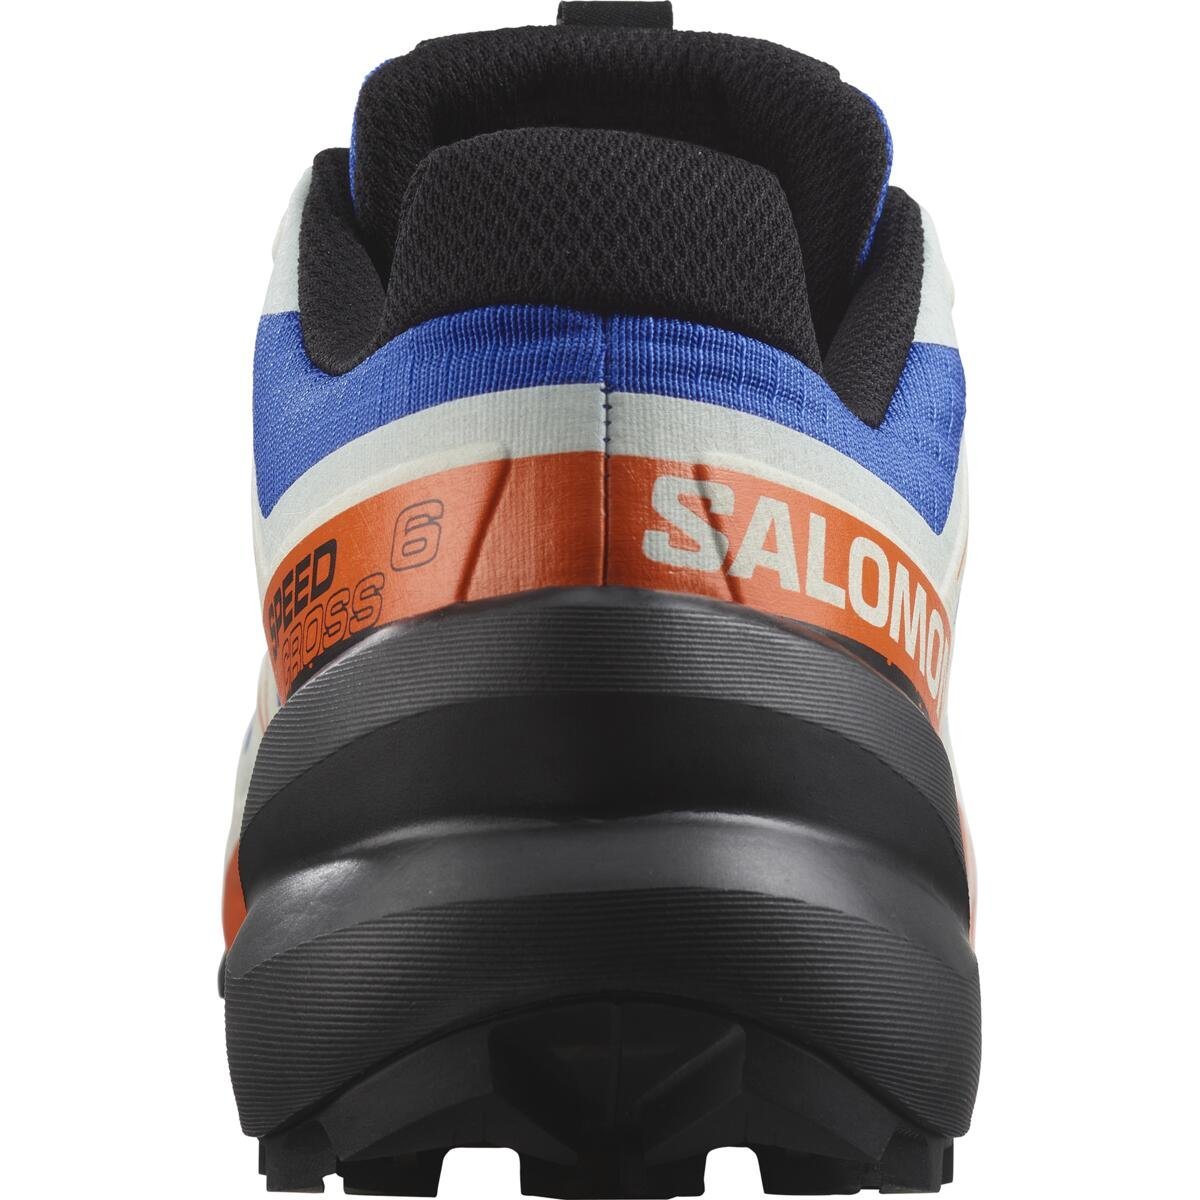 Obuv Salomon Speedcross 6 M - modrá/biela